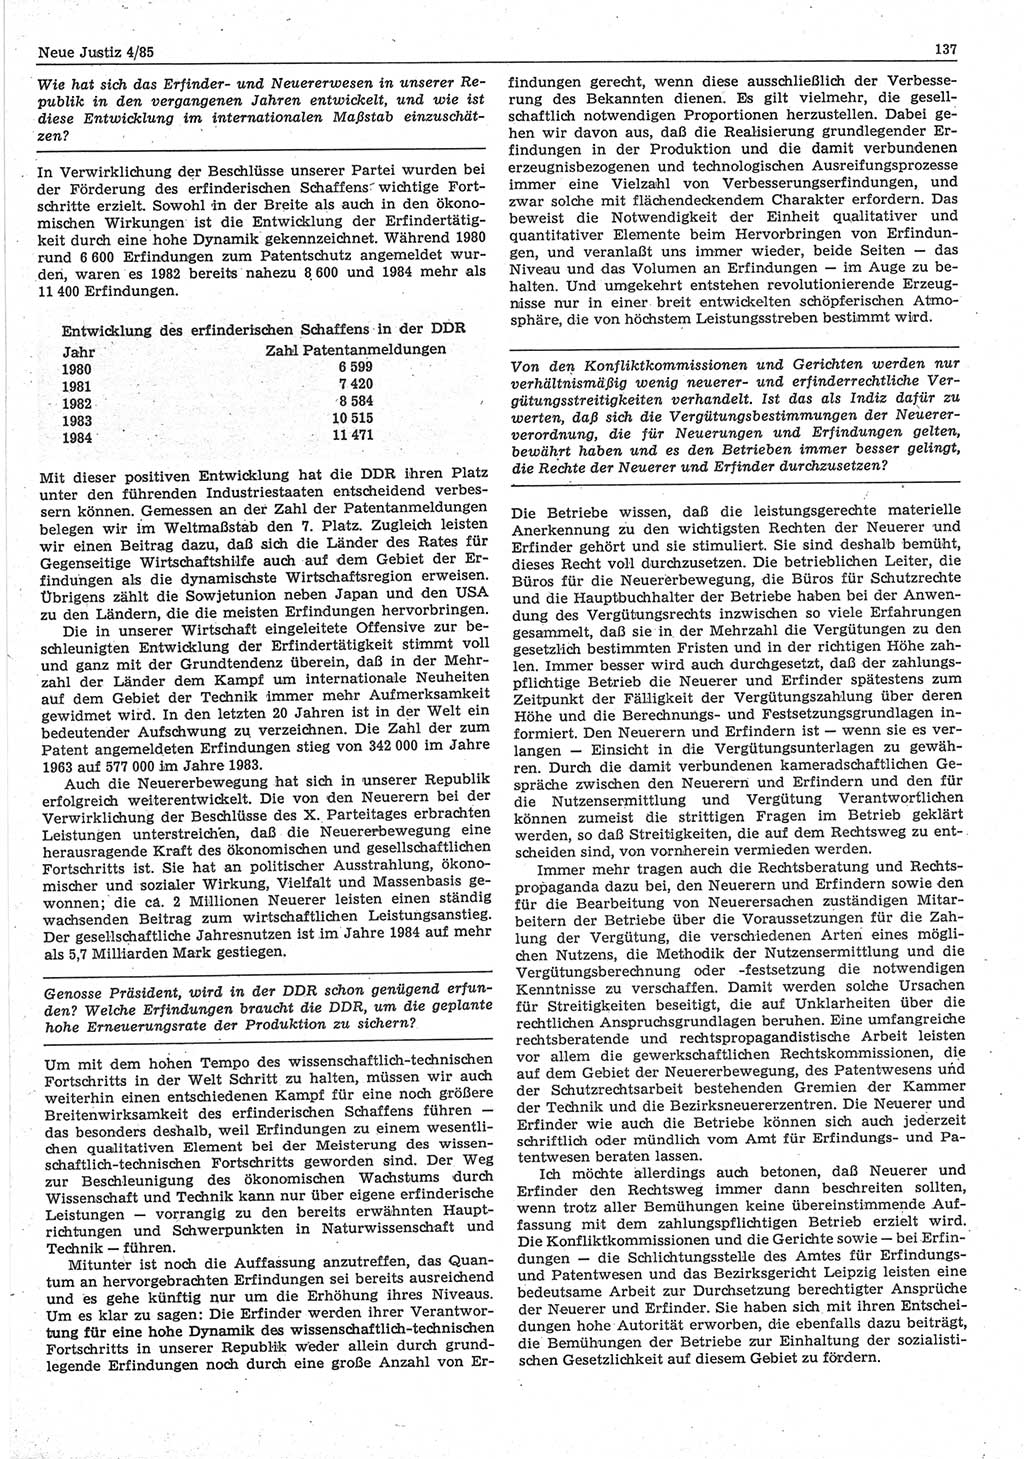 Neue Justiz (NJ), Zeitschrift für sozialistisches Recht und Gesetzlichkeit [Deutsche Demokratische Republik (DDR)], 39. Jahrgang 1985, Seite 137 (NJ DDR 1985, S. 137)